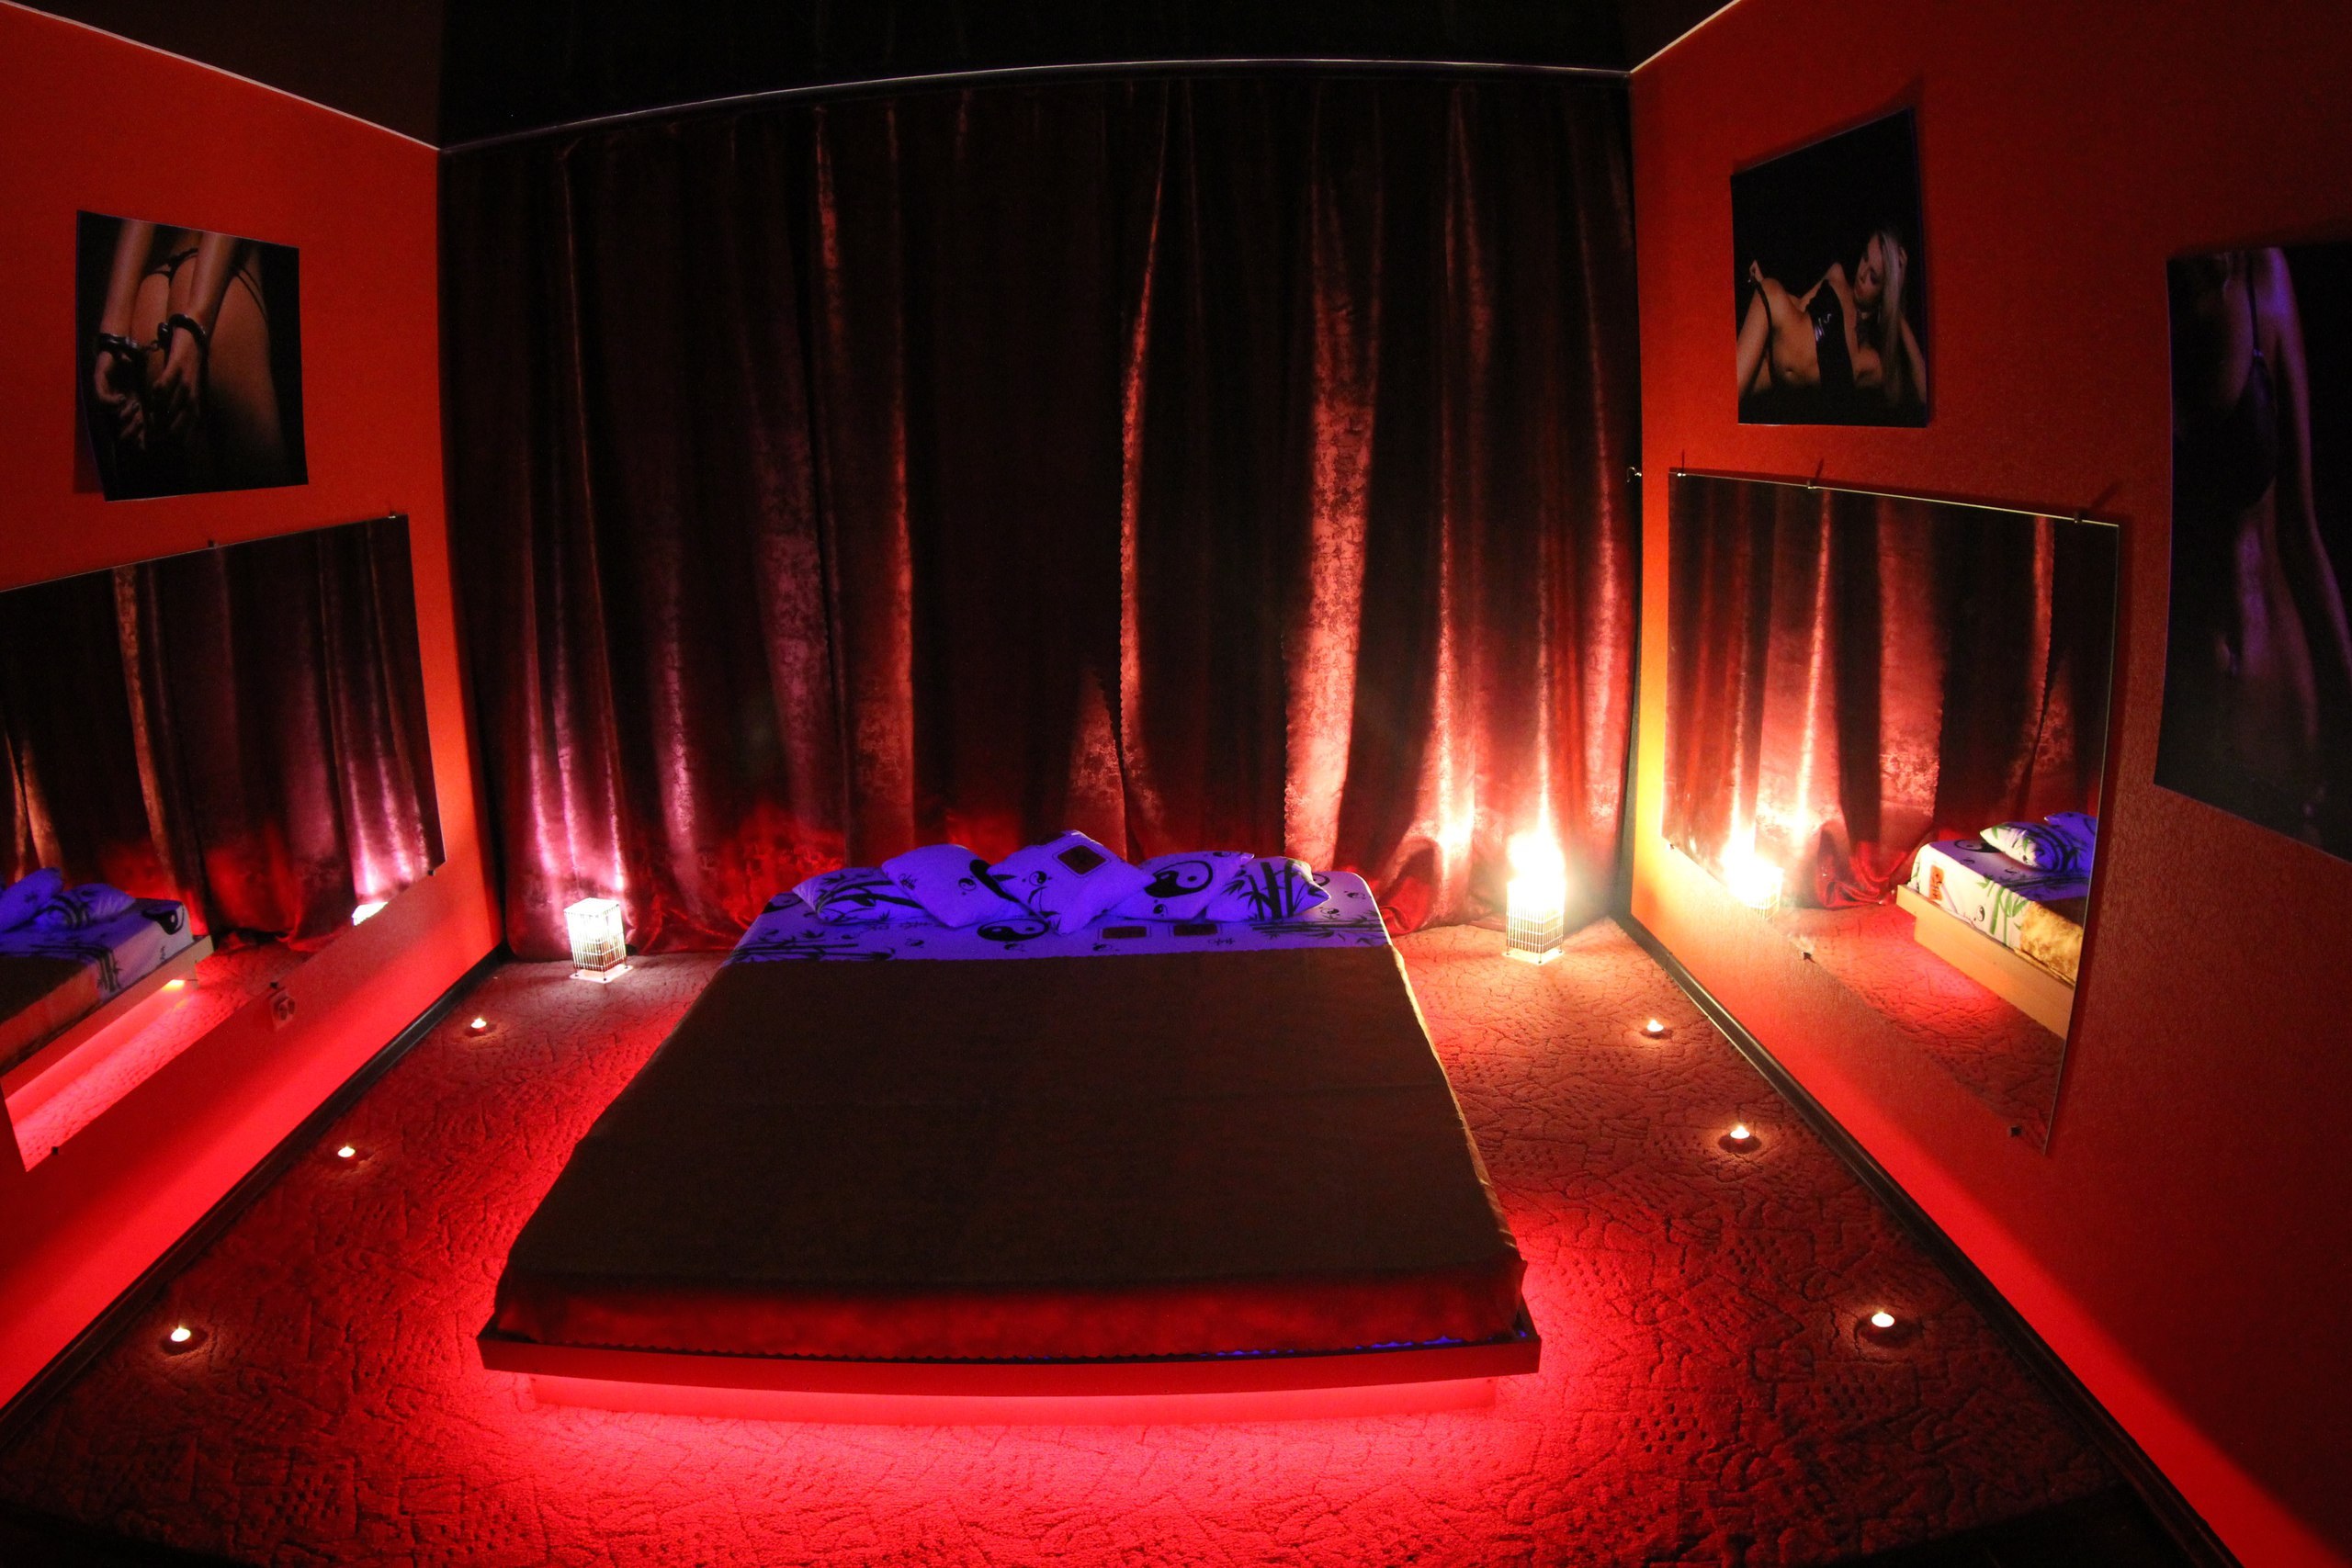 Кровать с красной подсветкой